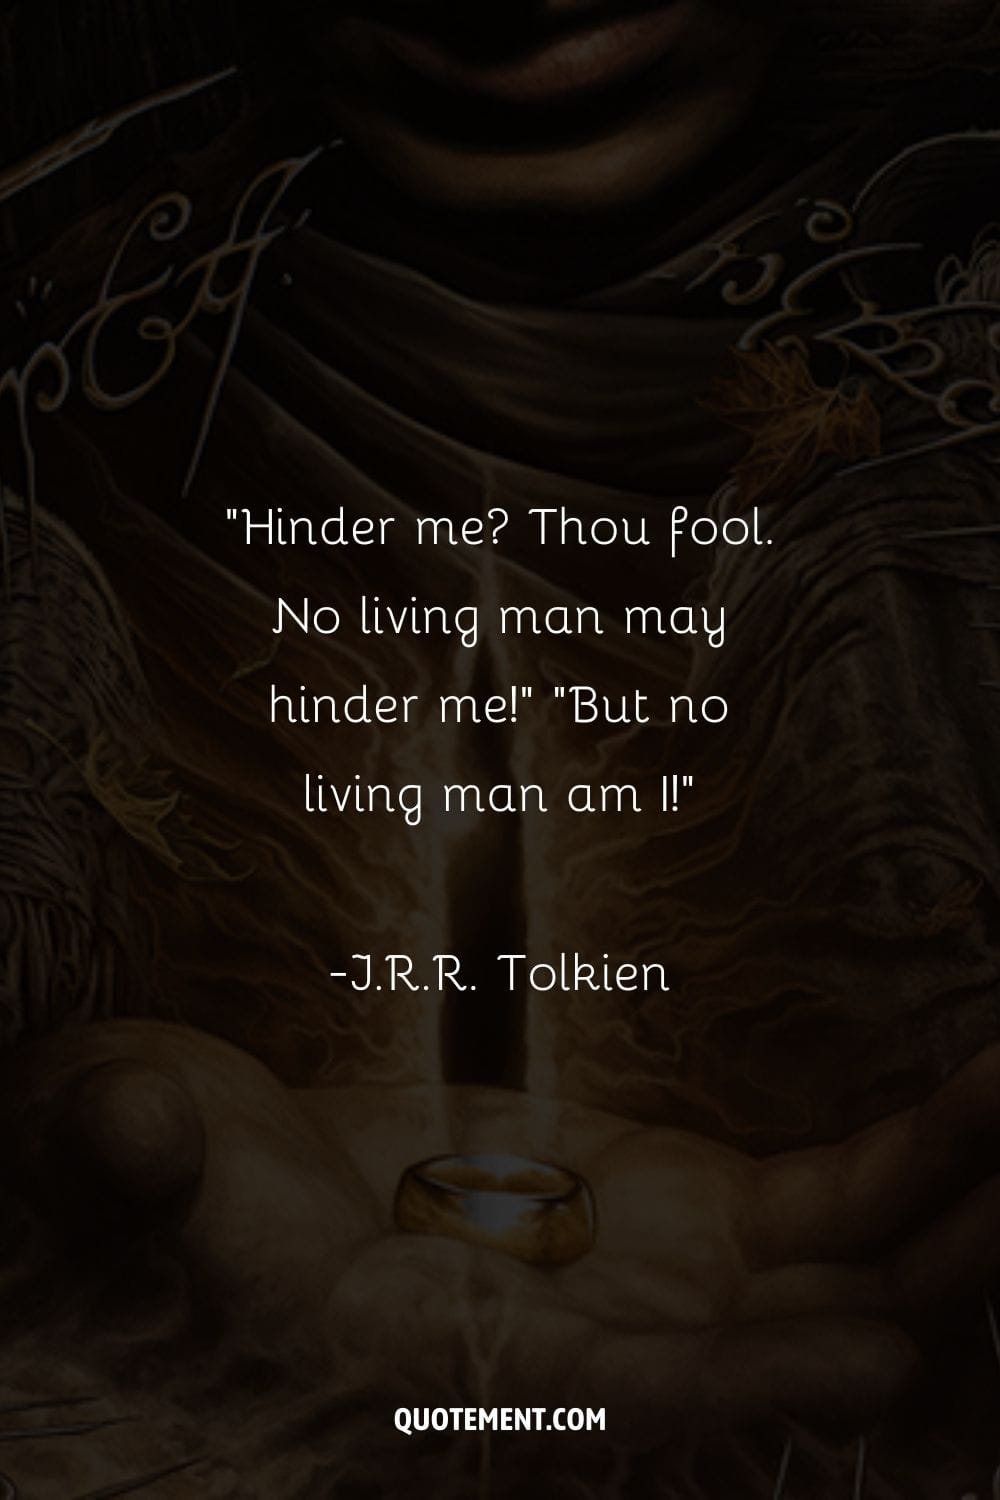 Hinder me Thou fool. No living man may hinder me! “But no living man am I!